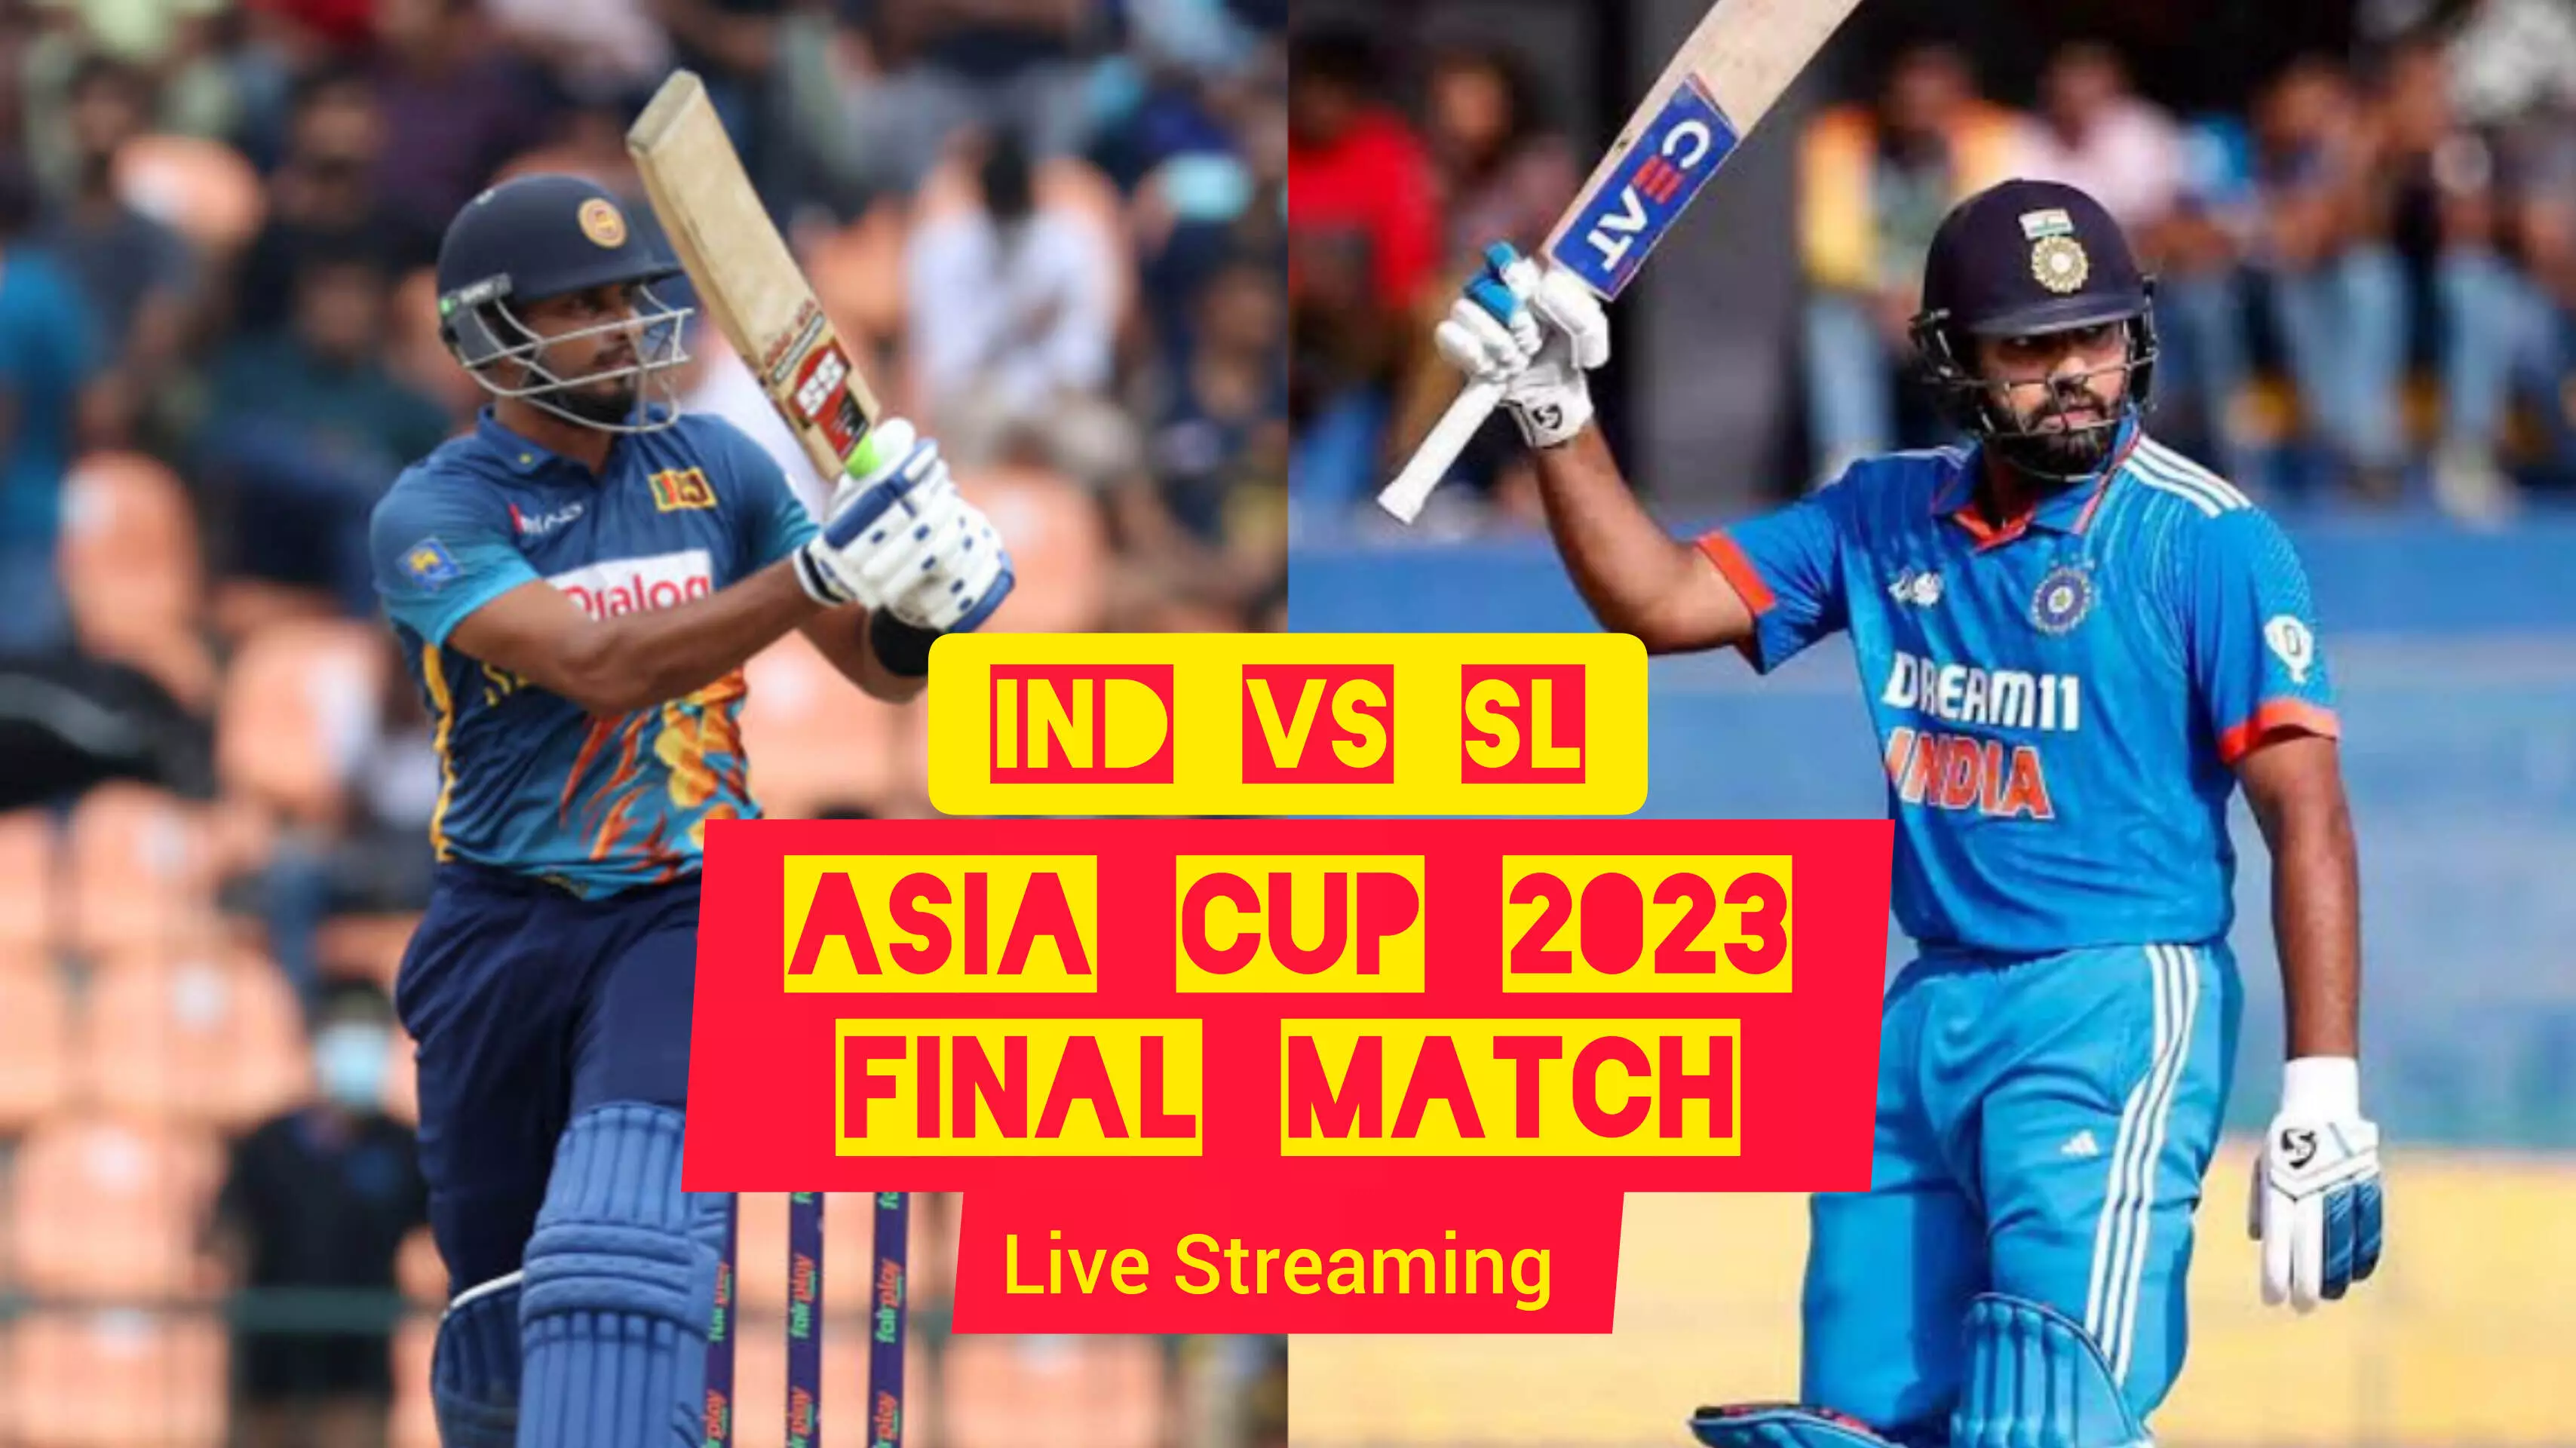 India vs Sri Lanka Asia Cup 2023 Final Live Streaming कब और कहां देखें लाइव, यहां जानें सभी डिटेल्स